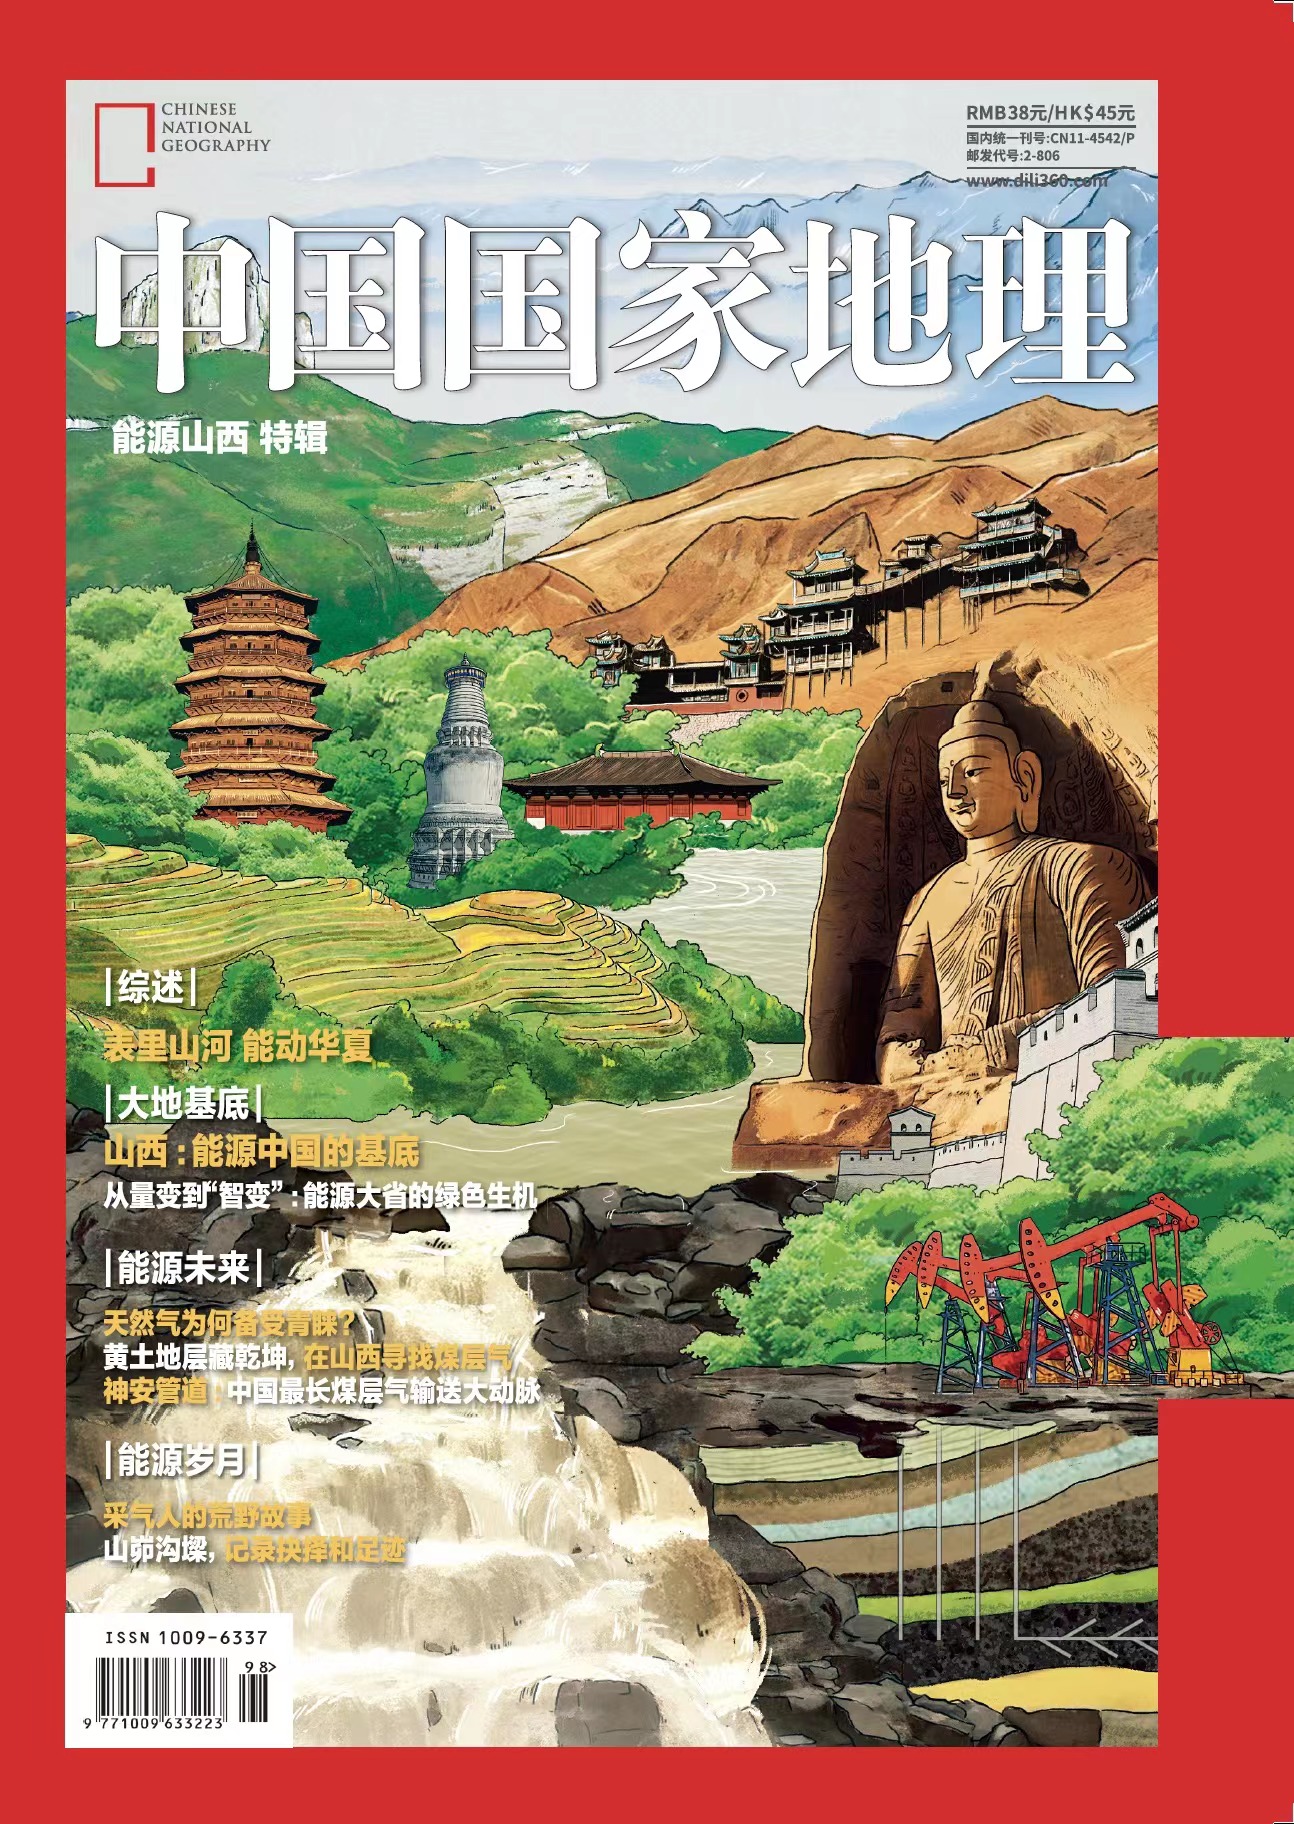 《中国国家地理·能源山西》增刊 从山 西独特的地质条件出发、探究这片土地上的能源生成和转化机理